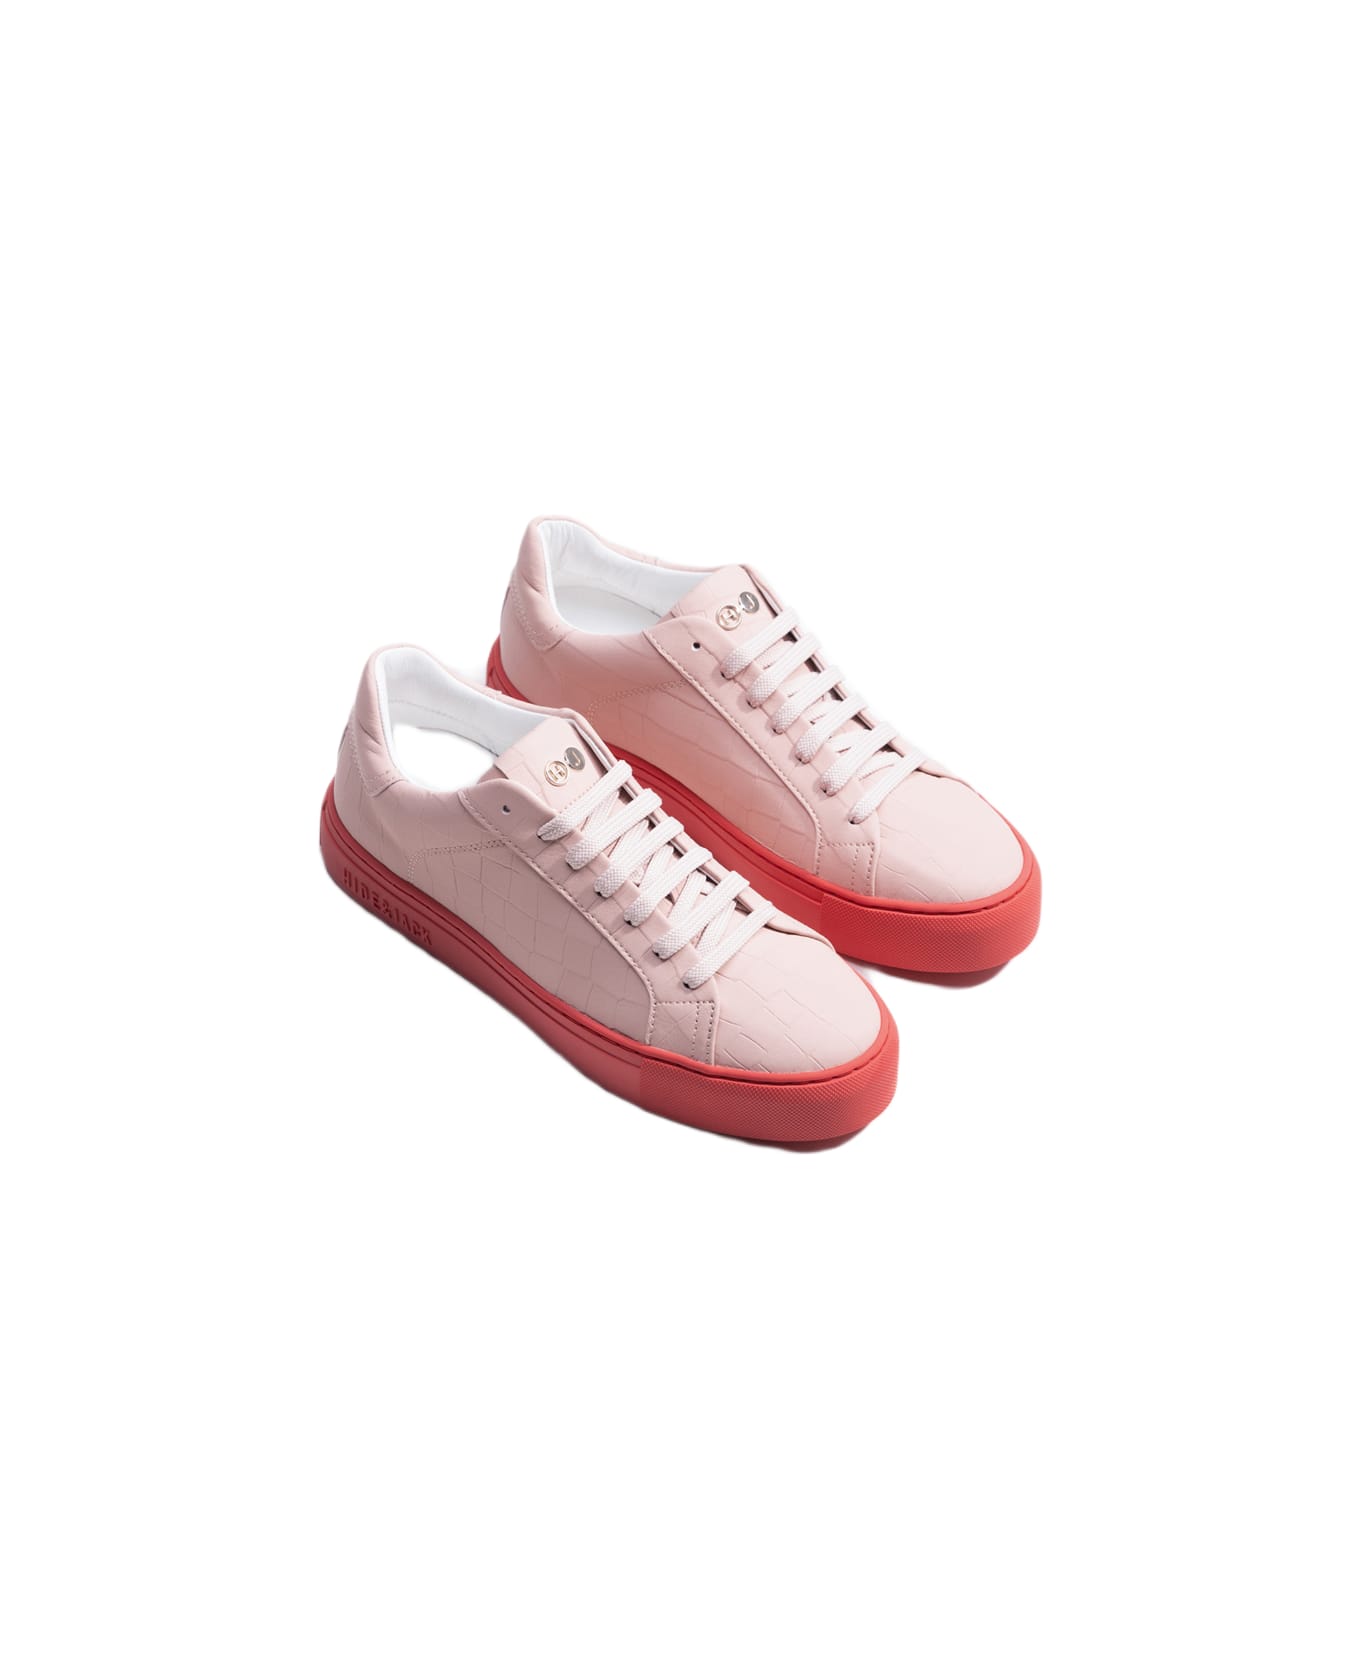 Hide&Jack Low Top Sneaker - Essence Pink Red スニーカー